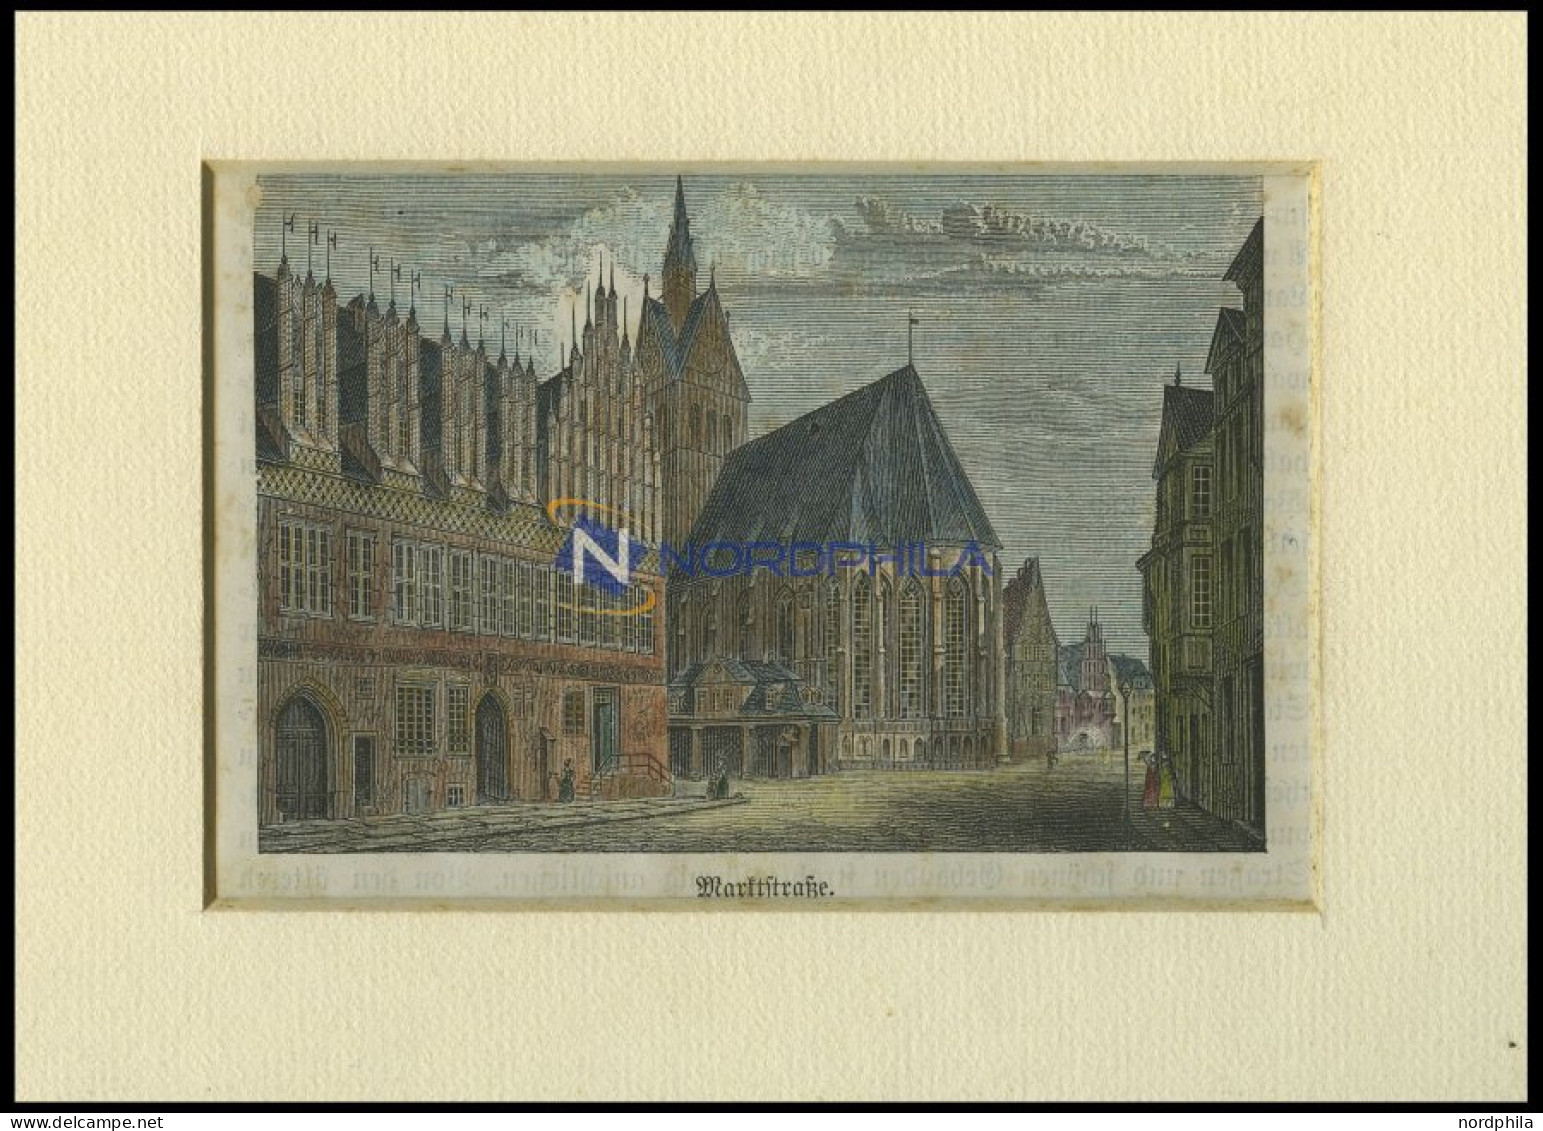 HANNOVER: Die Marktstraße, Kolorierter Holzstich Um 1880 - Prints & Engravings